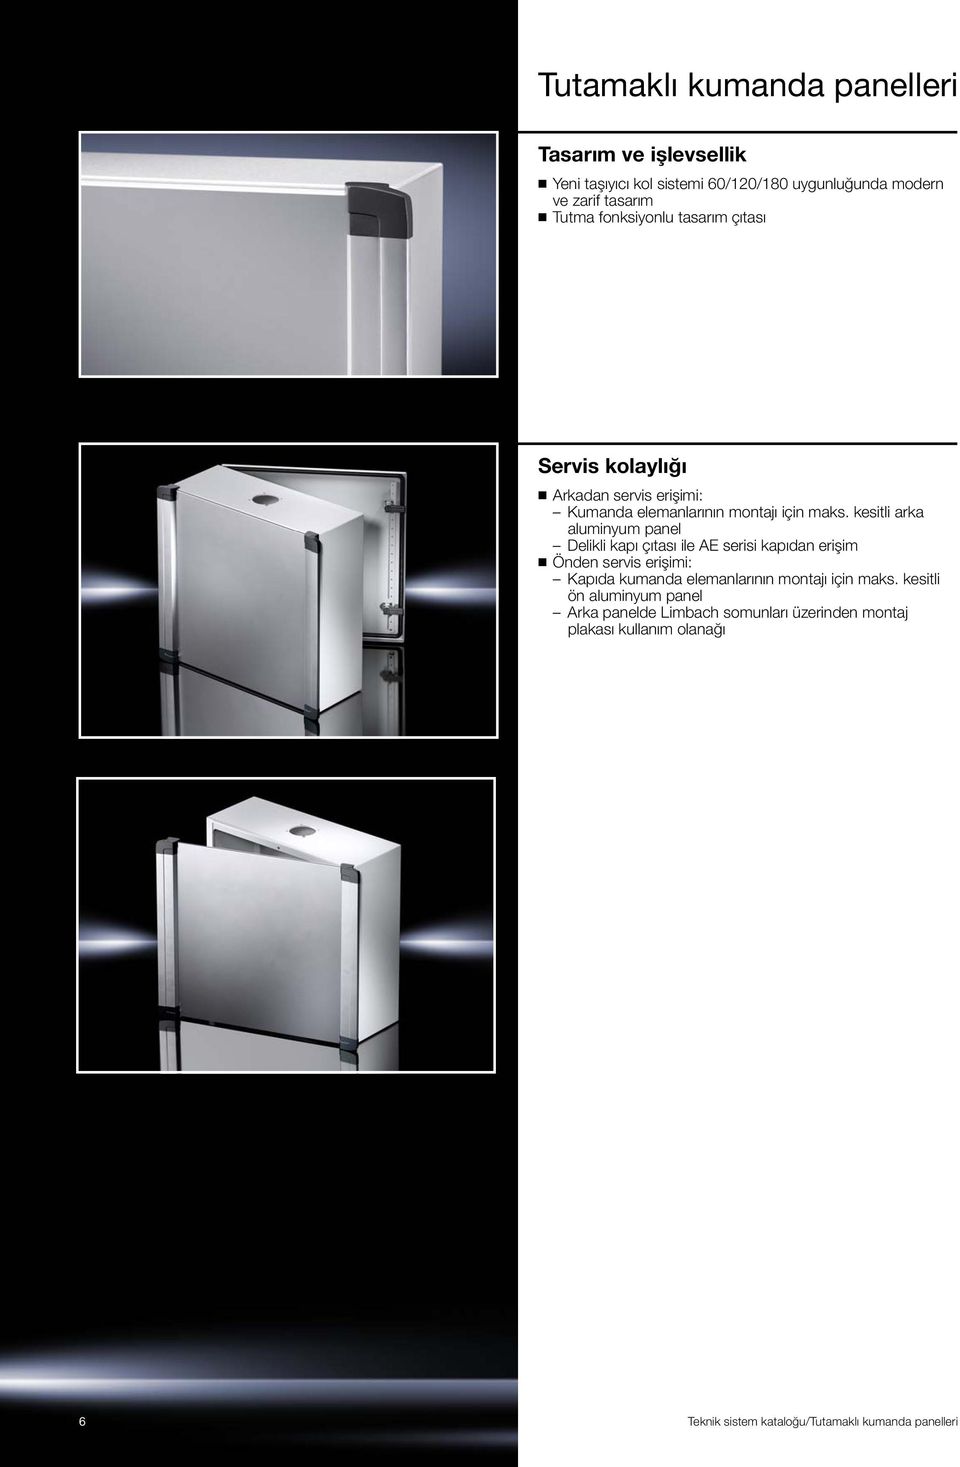 kesitli arka aluminyum panel Delikli kapı çıtası ile AE serisi kapıdan erişim Önden servis erişimi: Kapıda kumanda